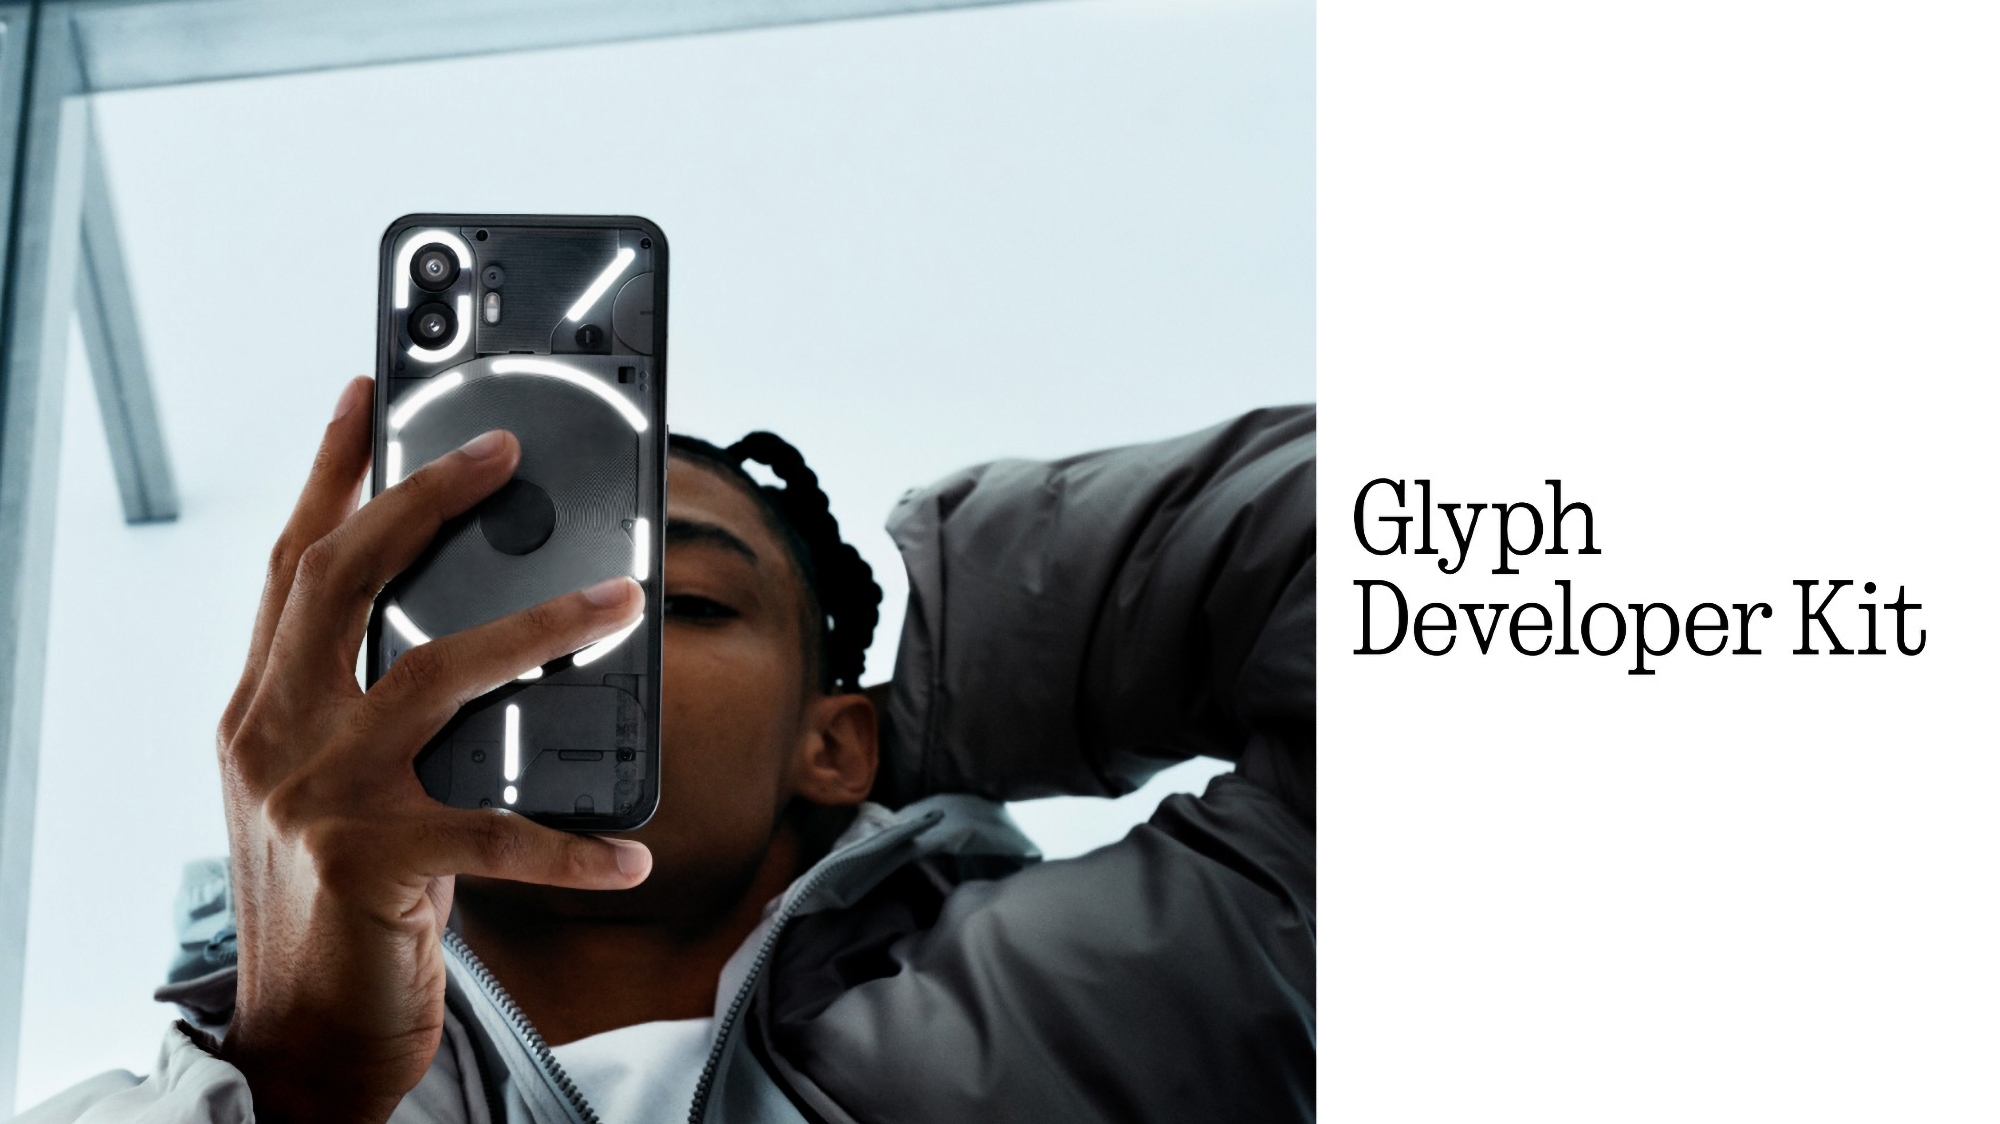 Nada ha anunciado el Glyph Developer Kit para desarrolladores de aplicaciones